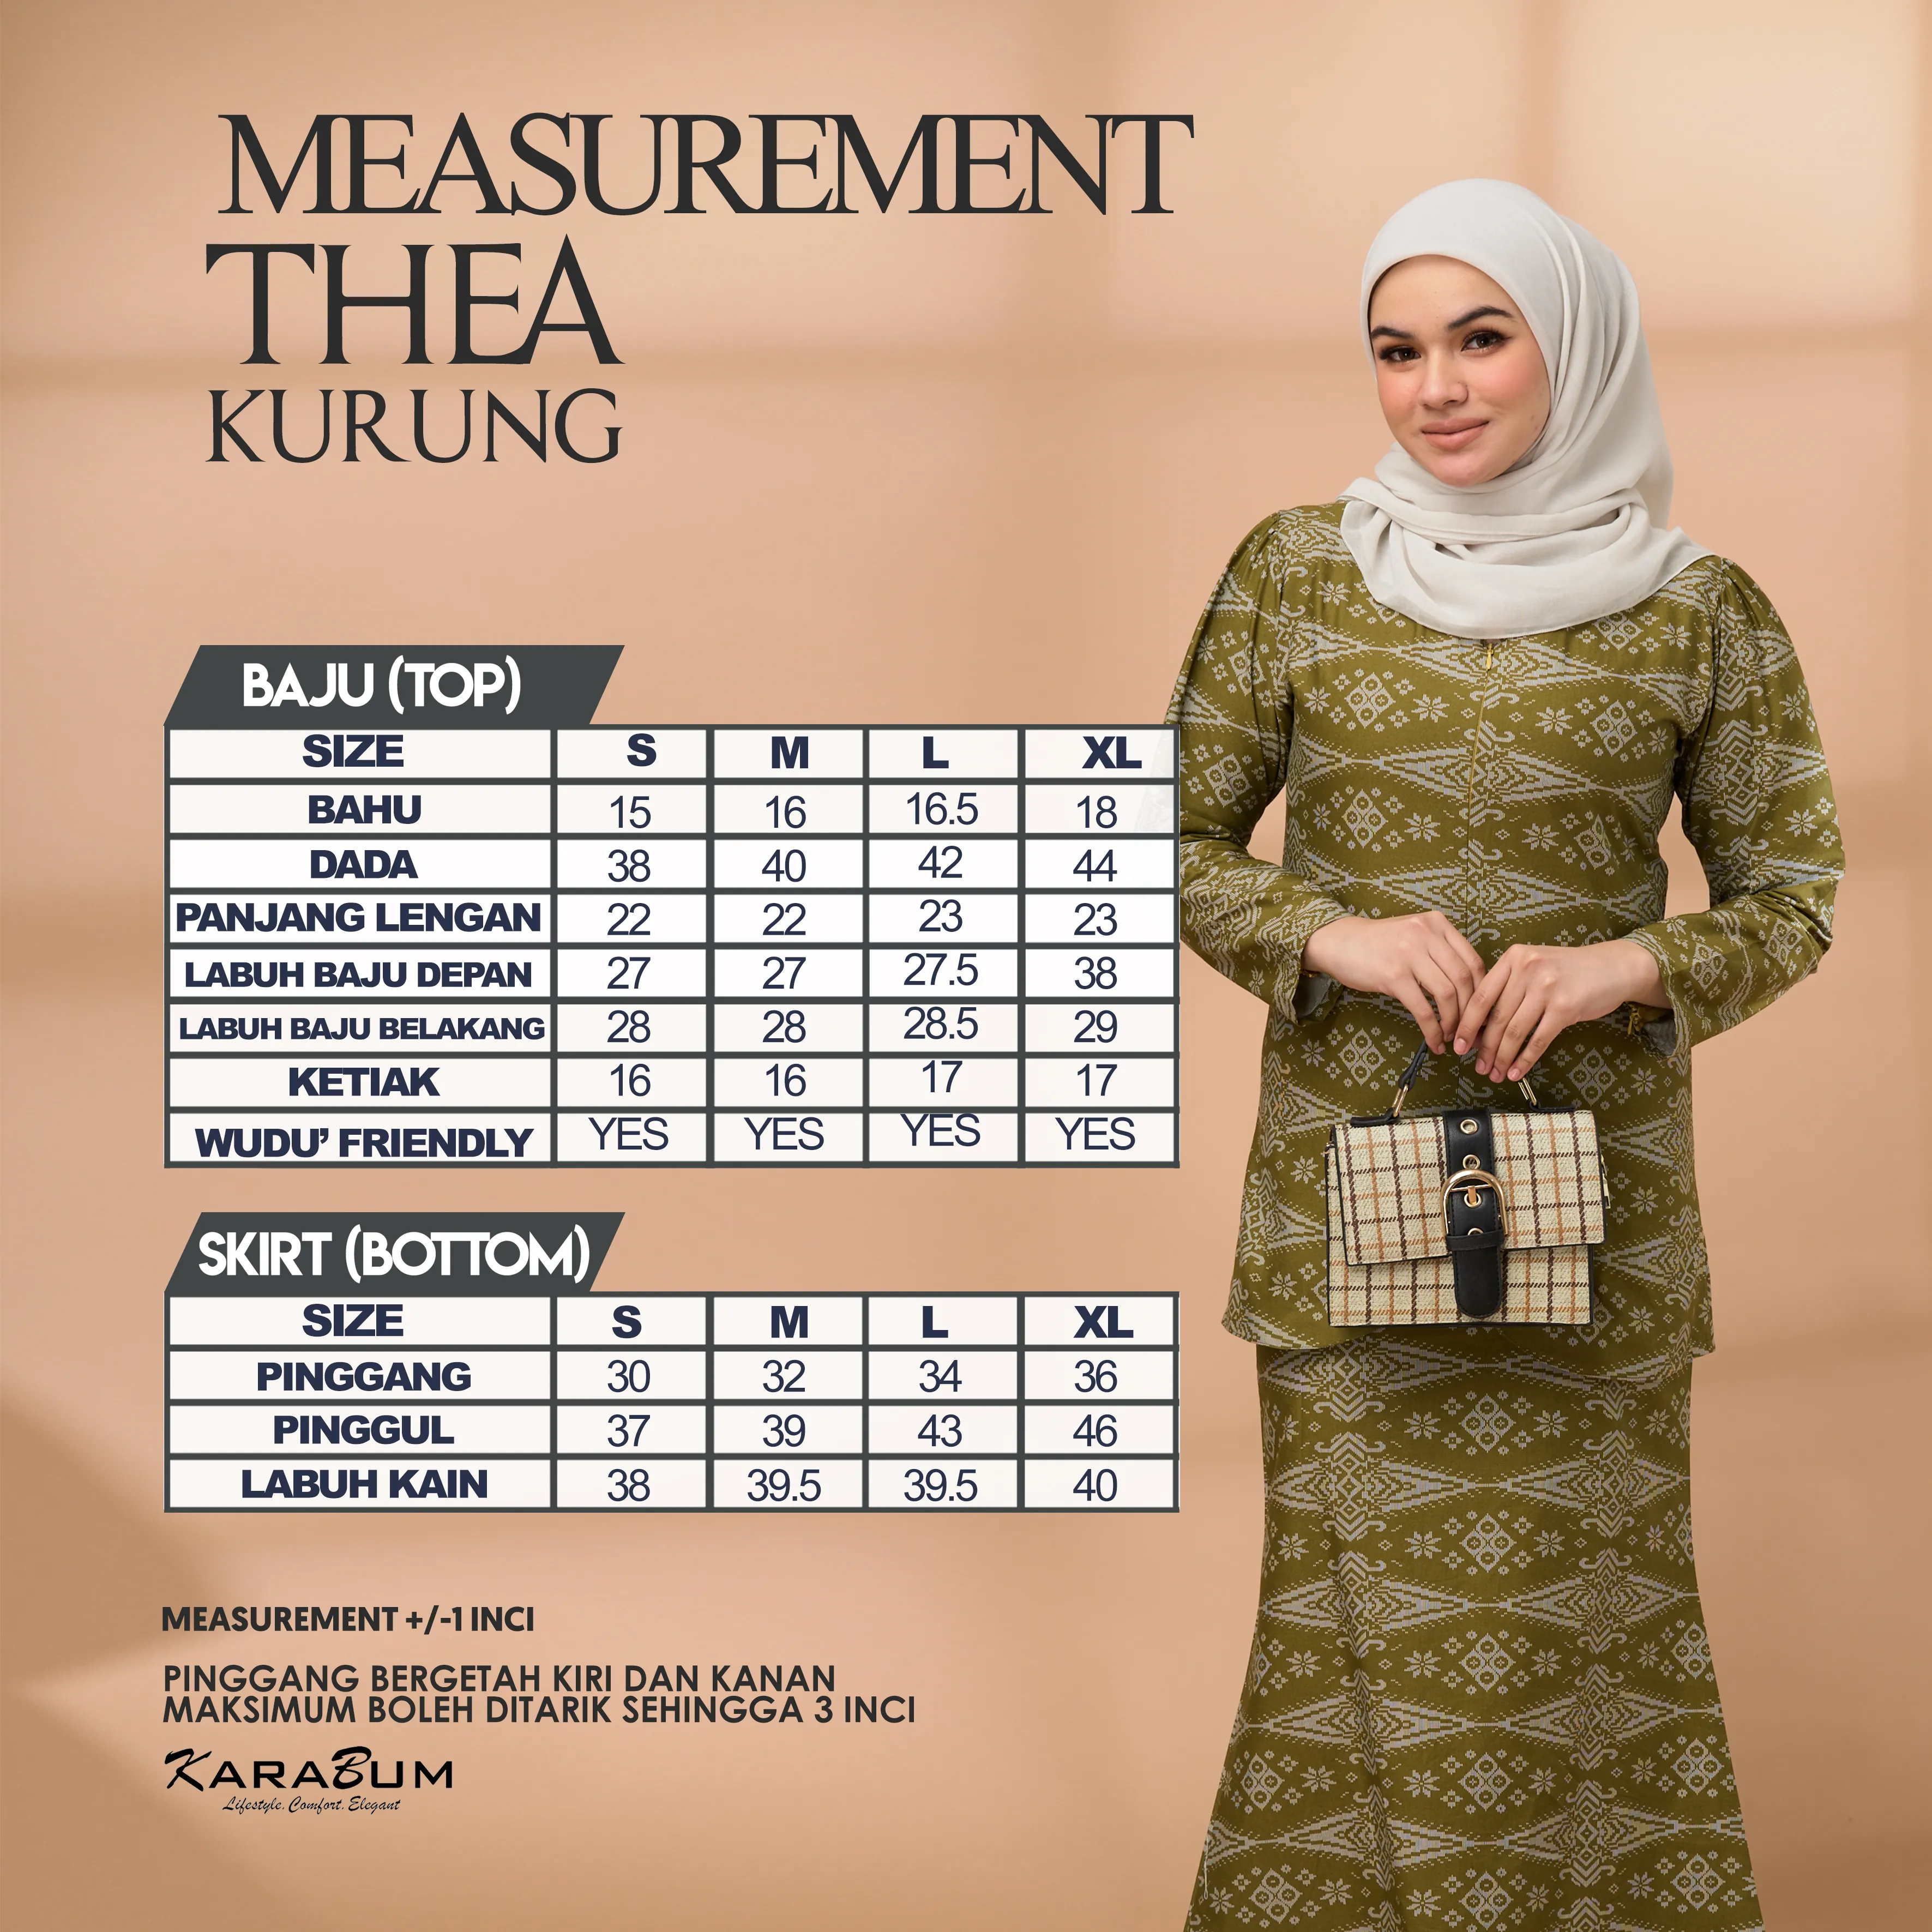 Measurement Thea Kurung